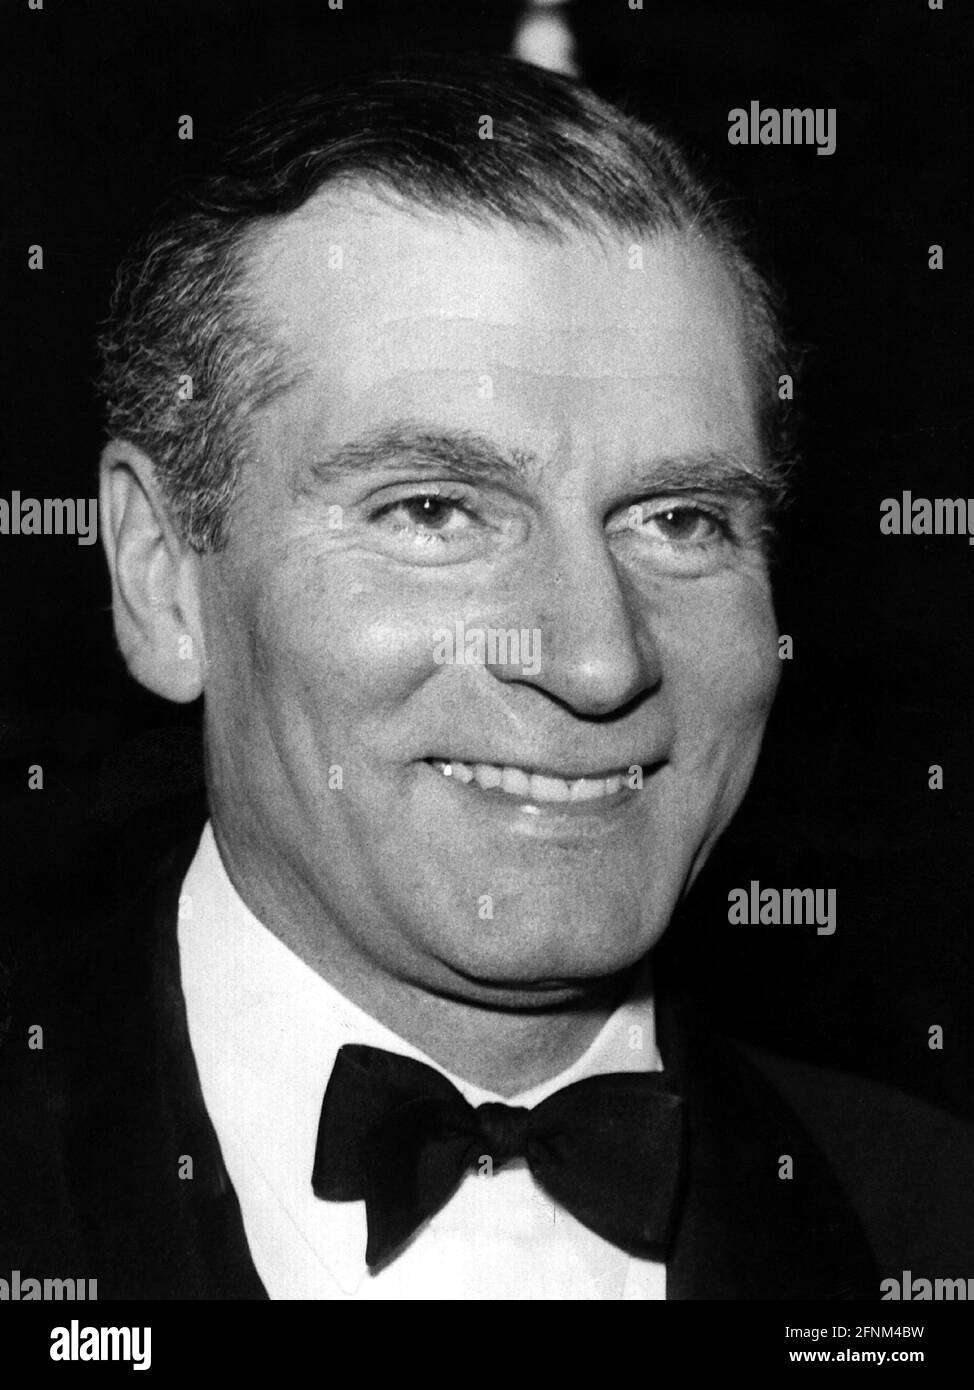 Olivier, Laurence Sir, 22.5.1907 - 11.7.1989, britischer Schauspieler, Porträt, 50er Jahre, Fliege, ZUSÄTZLICHE-RIGHTS-CLEARANCE-INFO-NOT-AVAILABLE Stockfoto